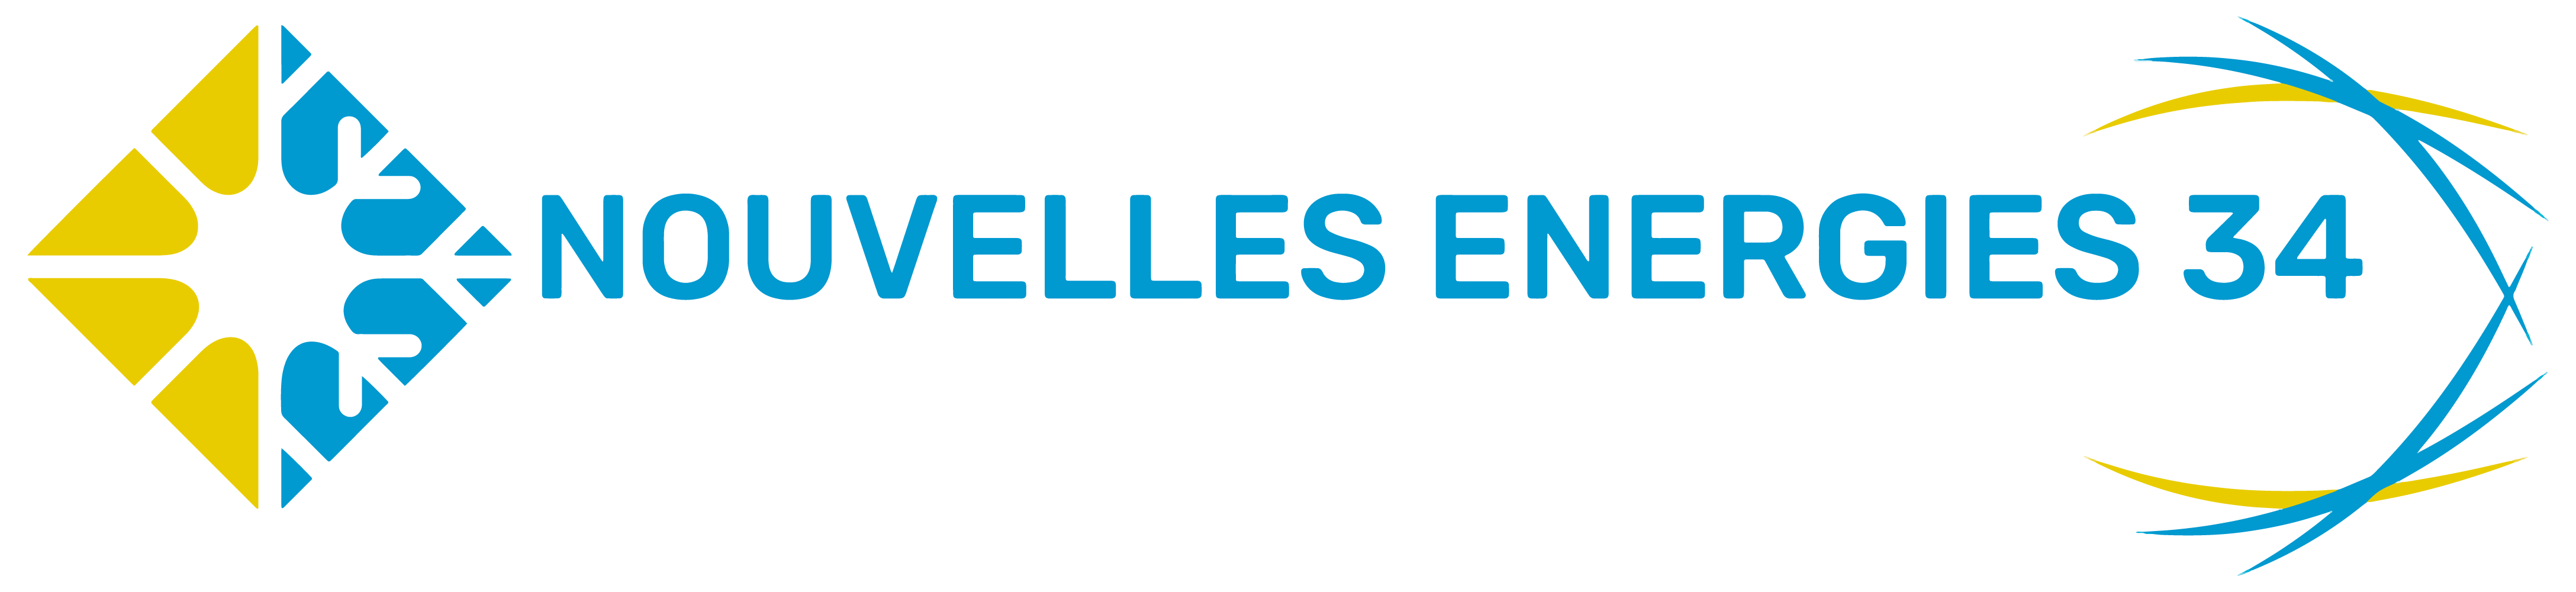 logo-NOUVELLES ENERGIES 34